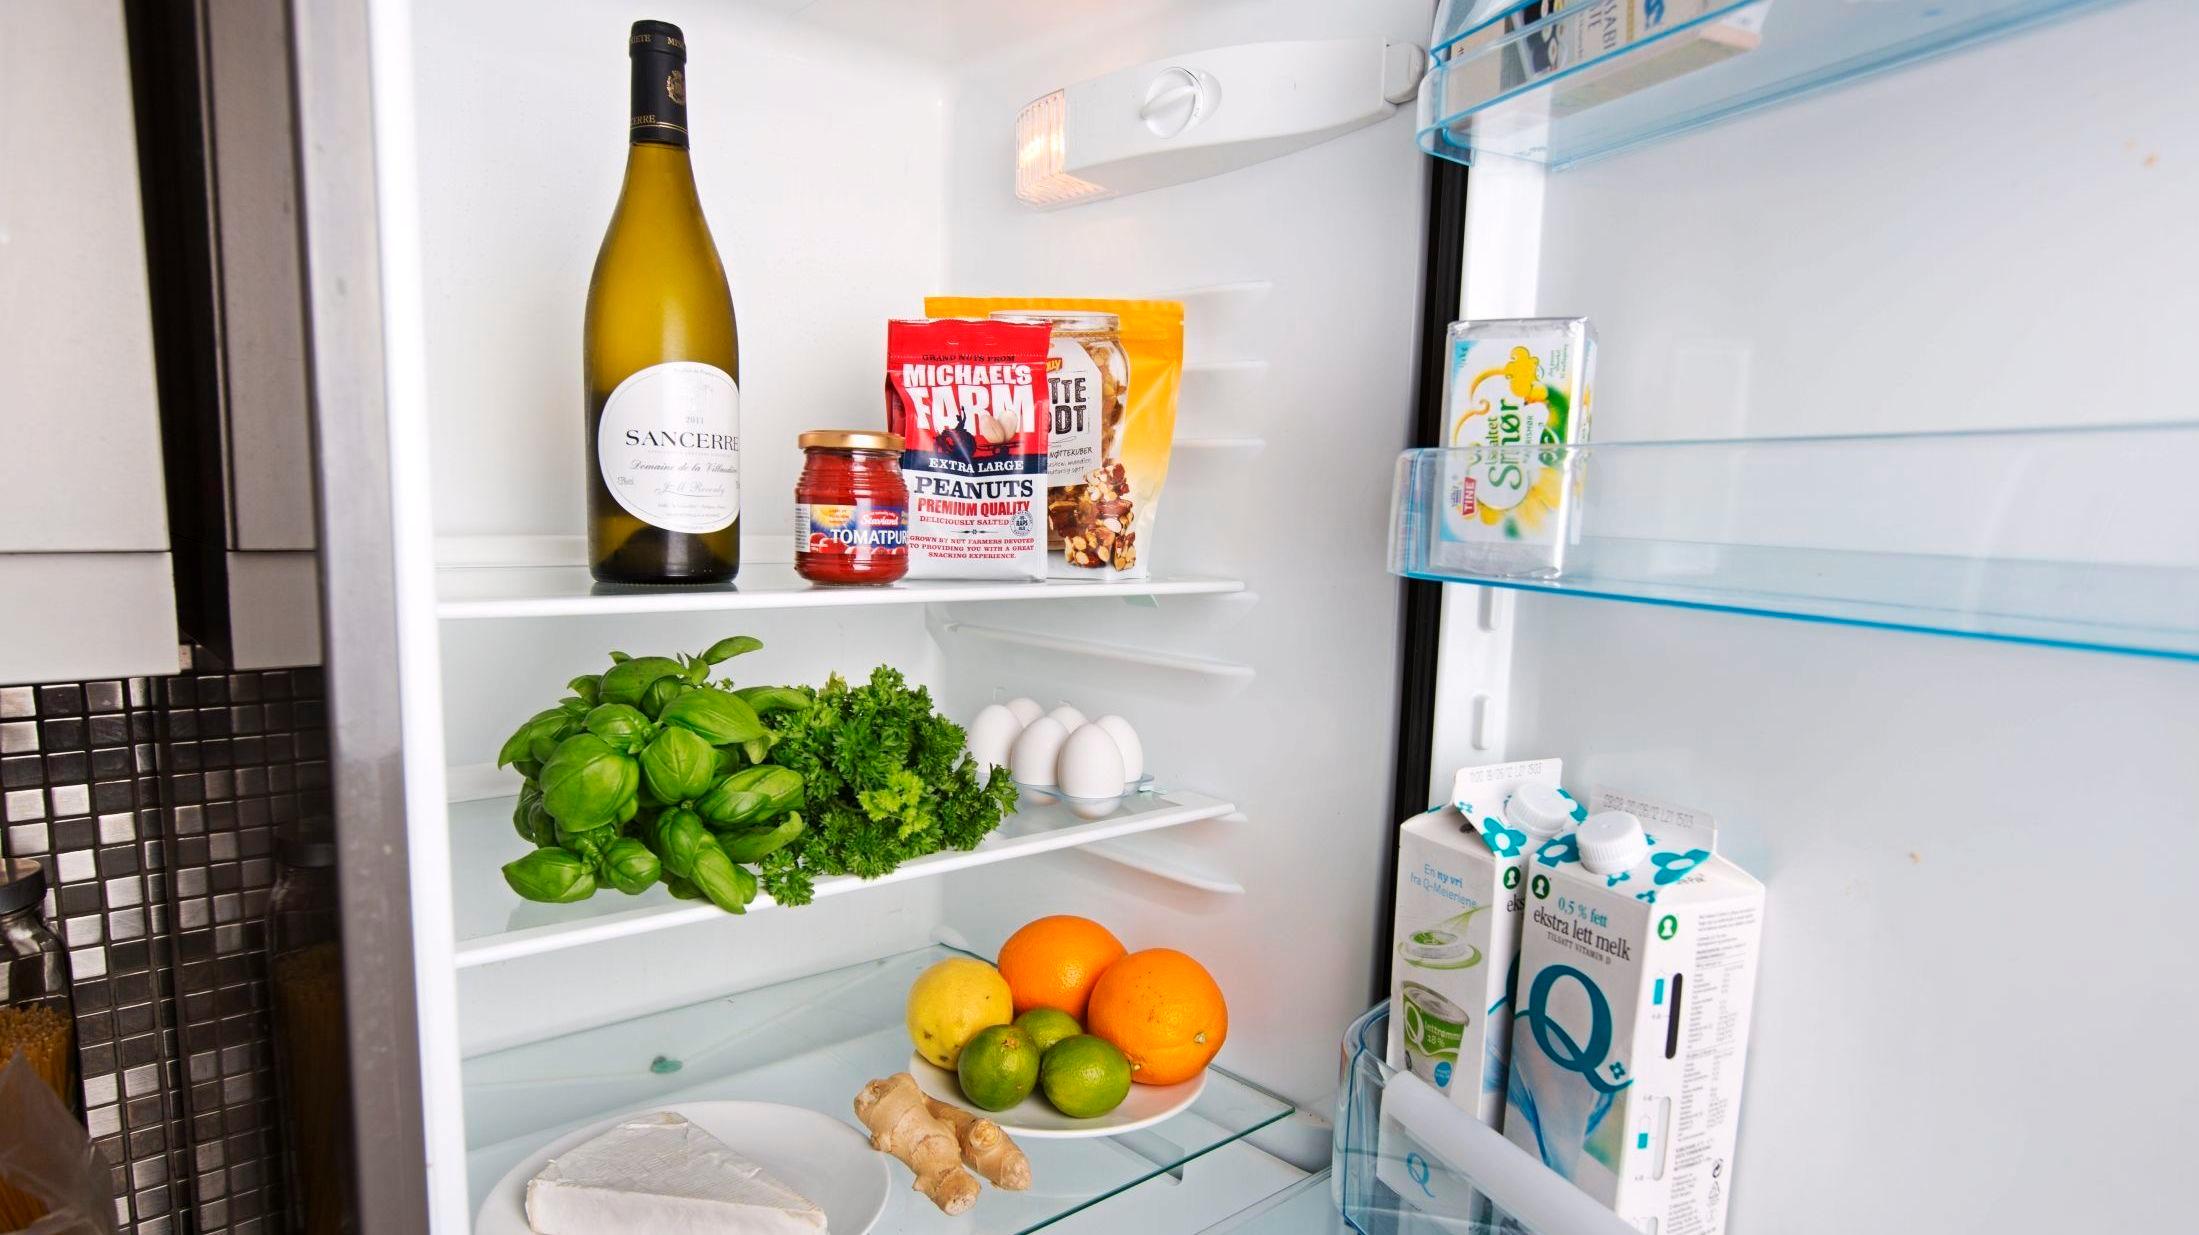 KALDEST I MIDTEN: Melk i døren på kjøleskapet er ikke nødvendigvis det beste stedet å ha den